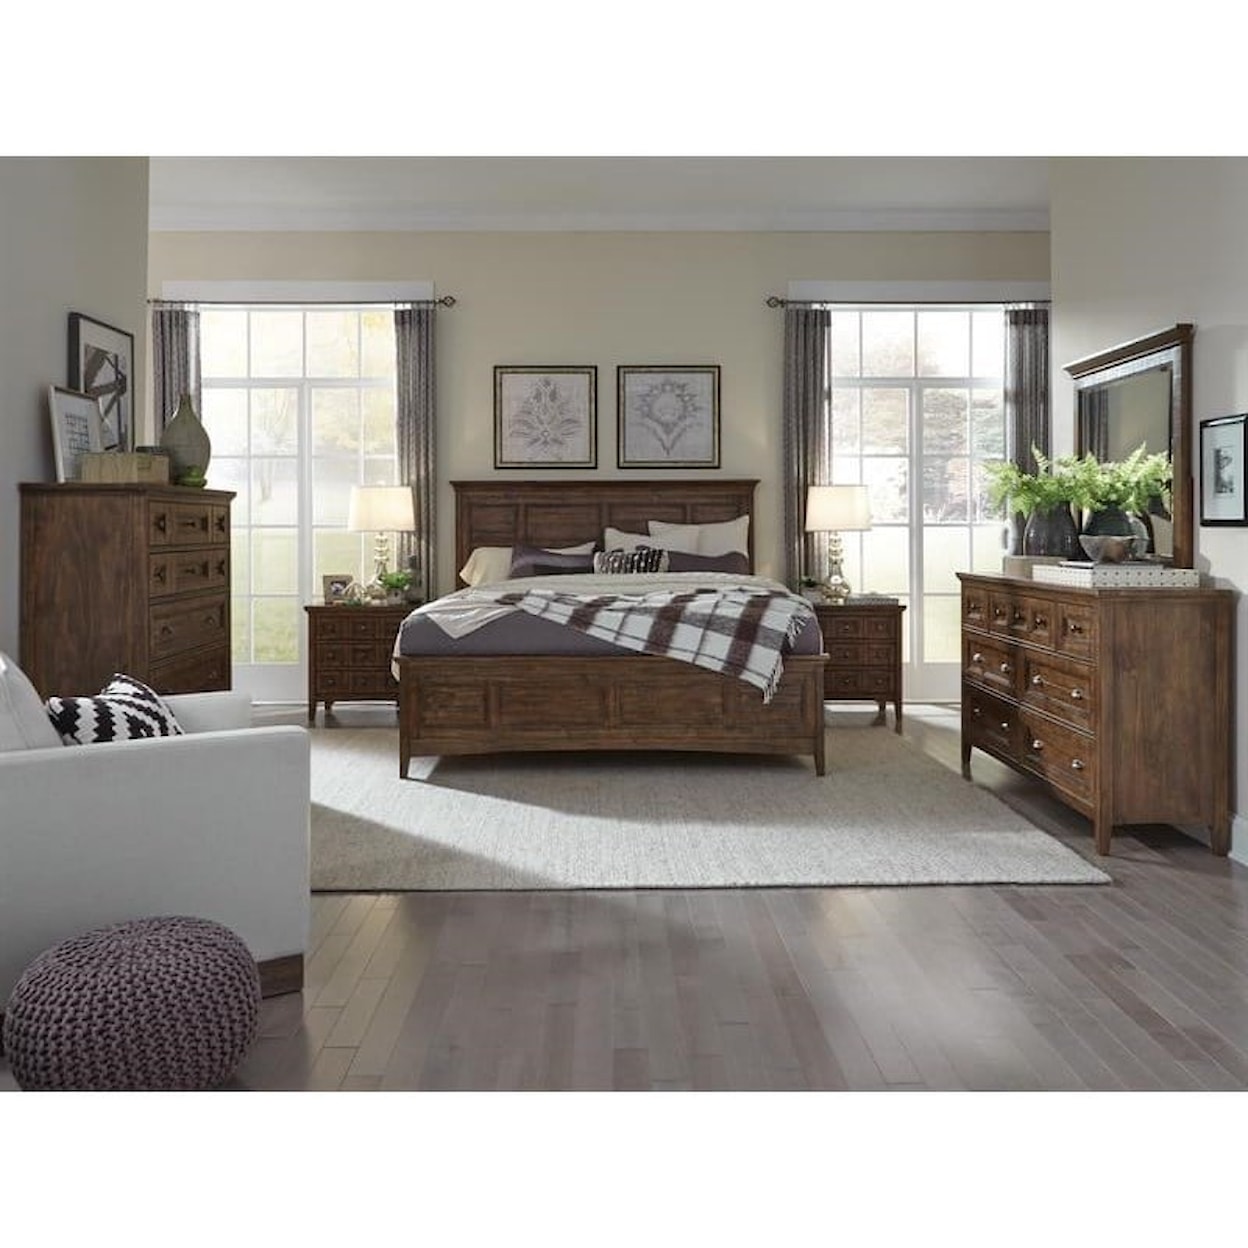 Magnussen Home Bay Creek Bedroom 7-Drawer Dresser and Mirror Set